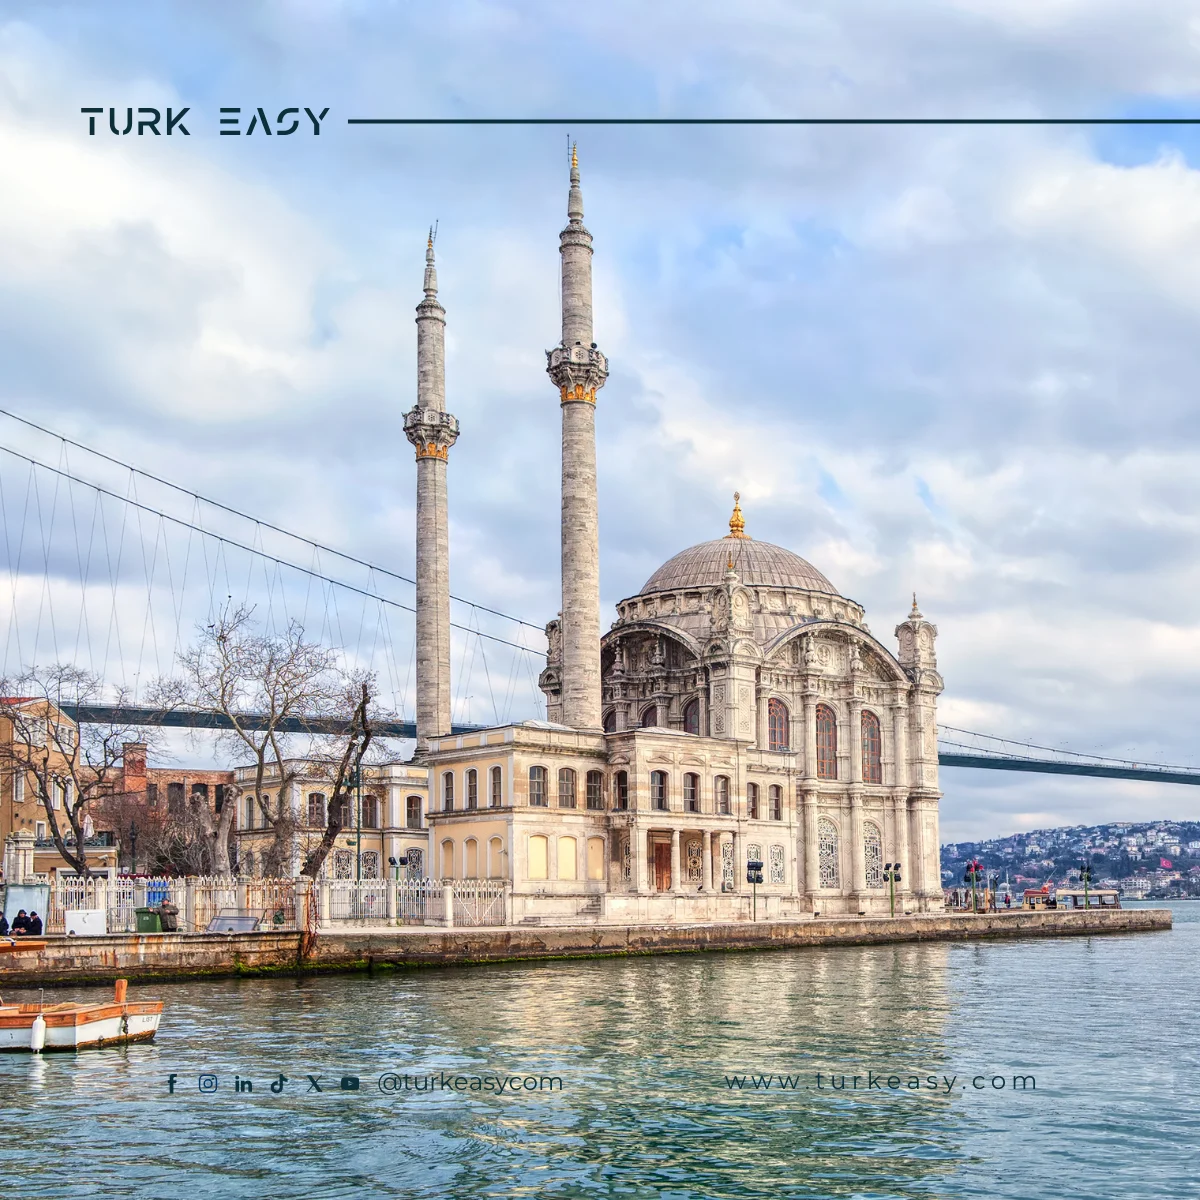 السياحة في تركيا: المزايا وأفضل الجولات - تورك ايزي